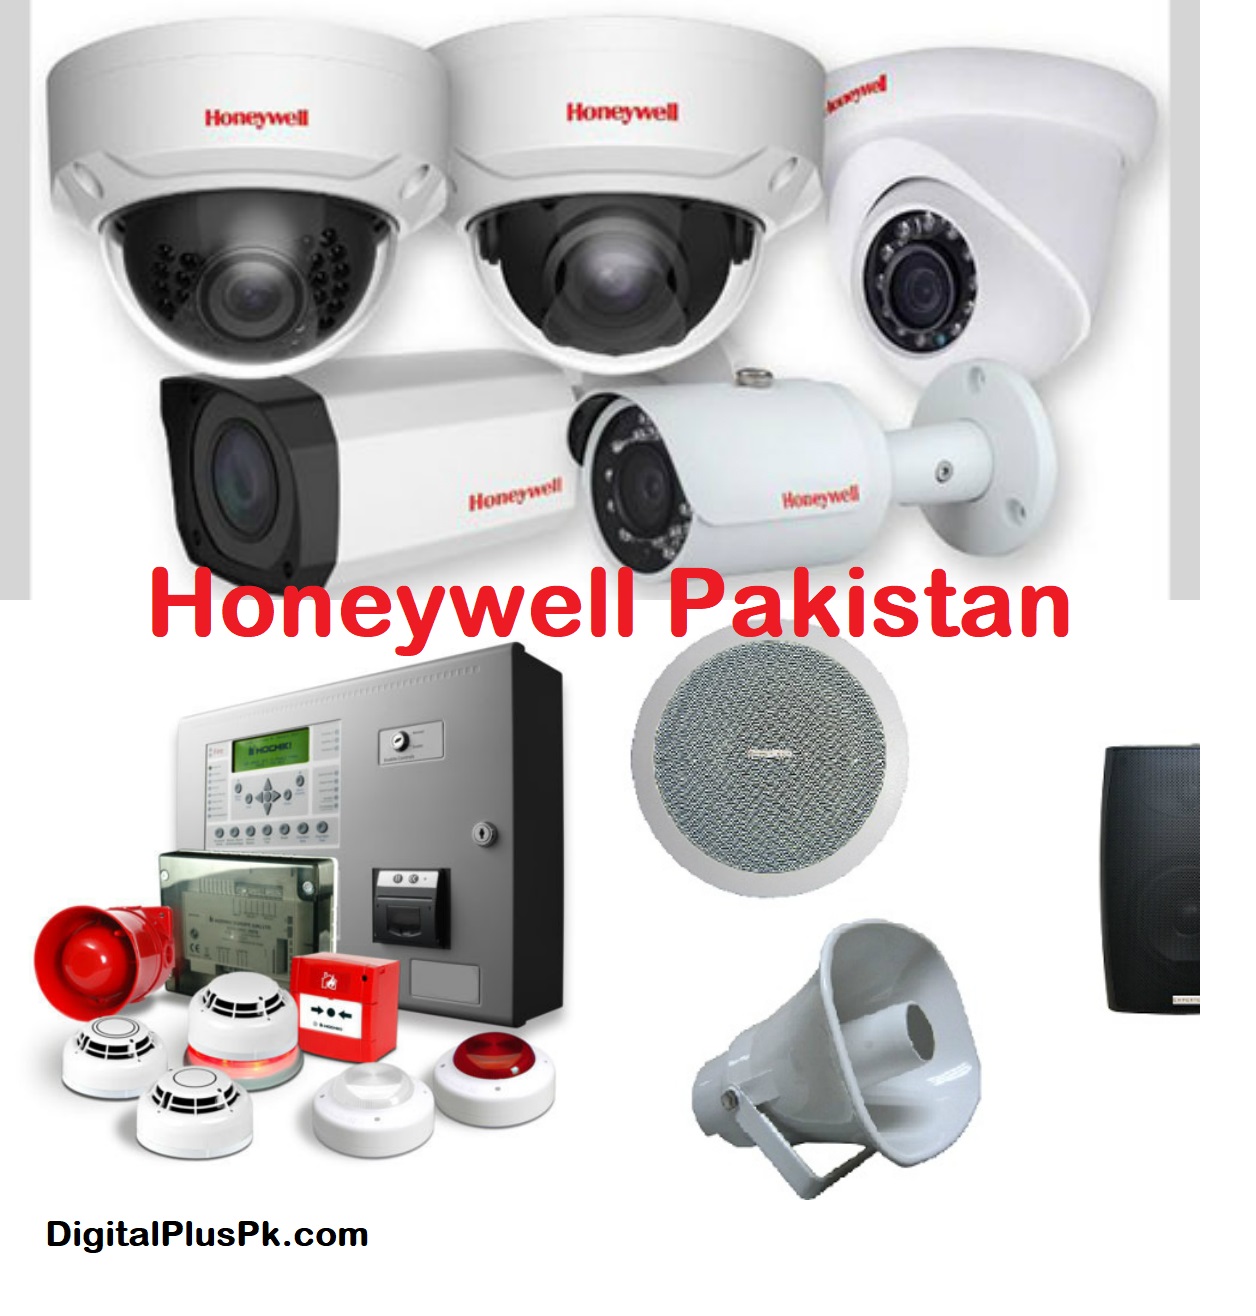 Honeywell Pakistan